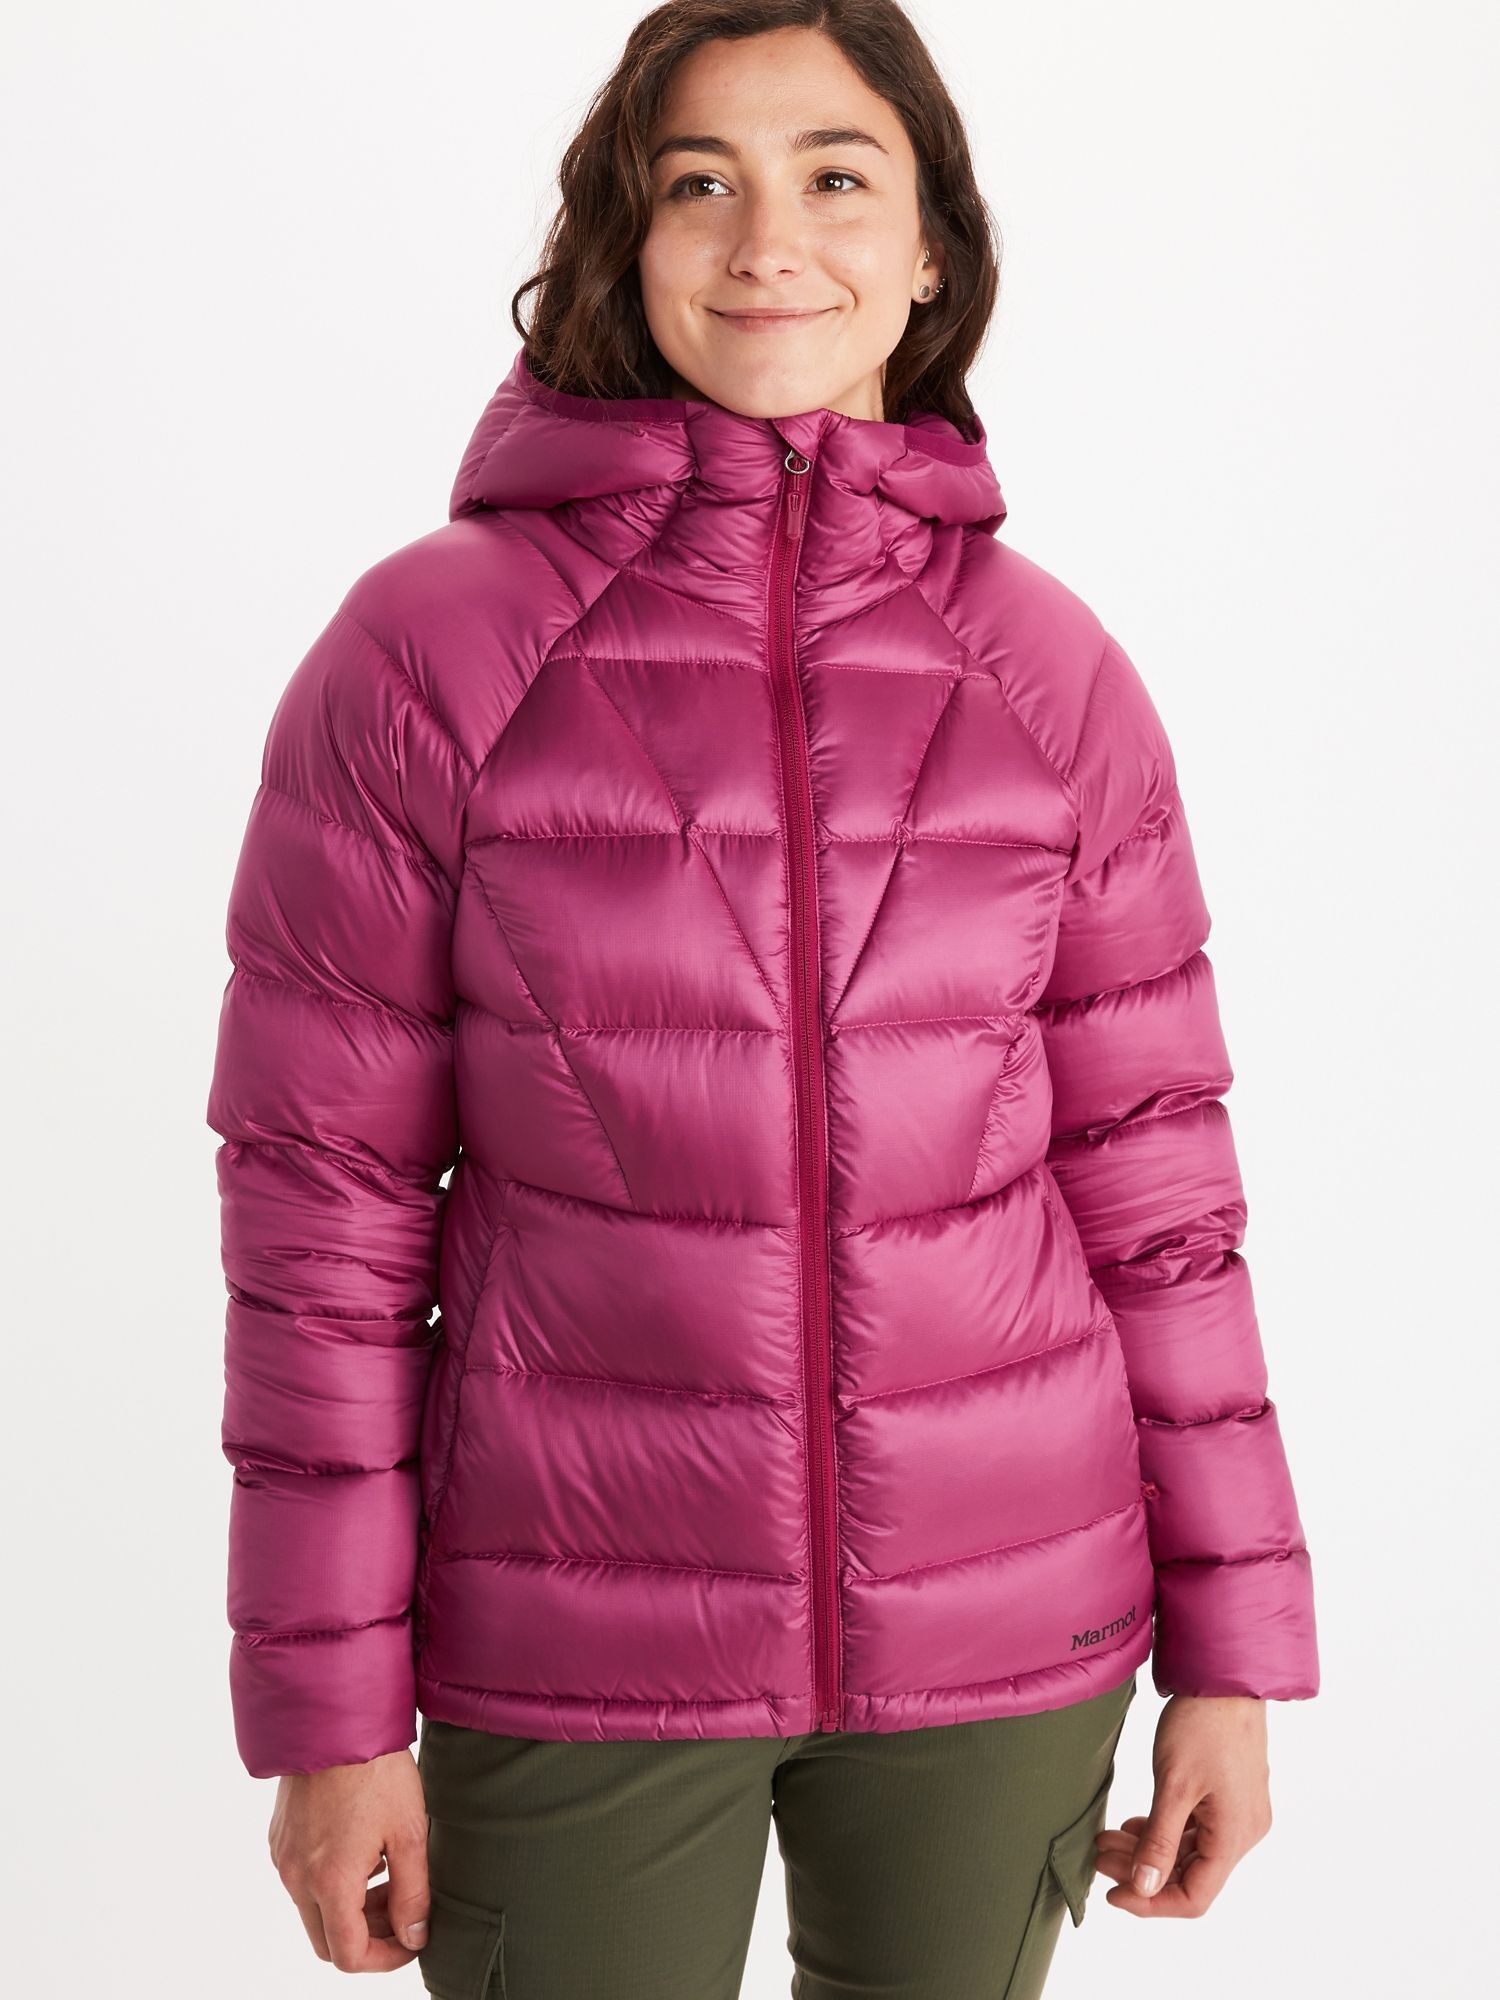 Marmot Hype Down Hoody - Down jacket - Women's